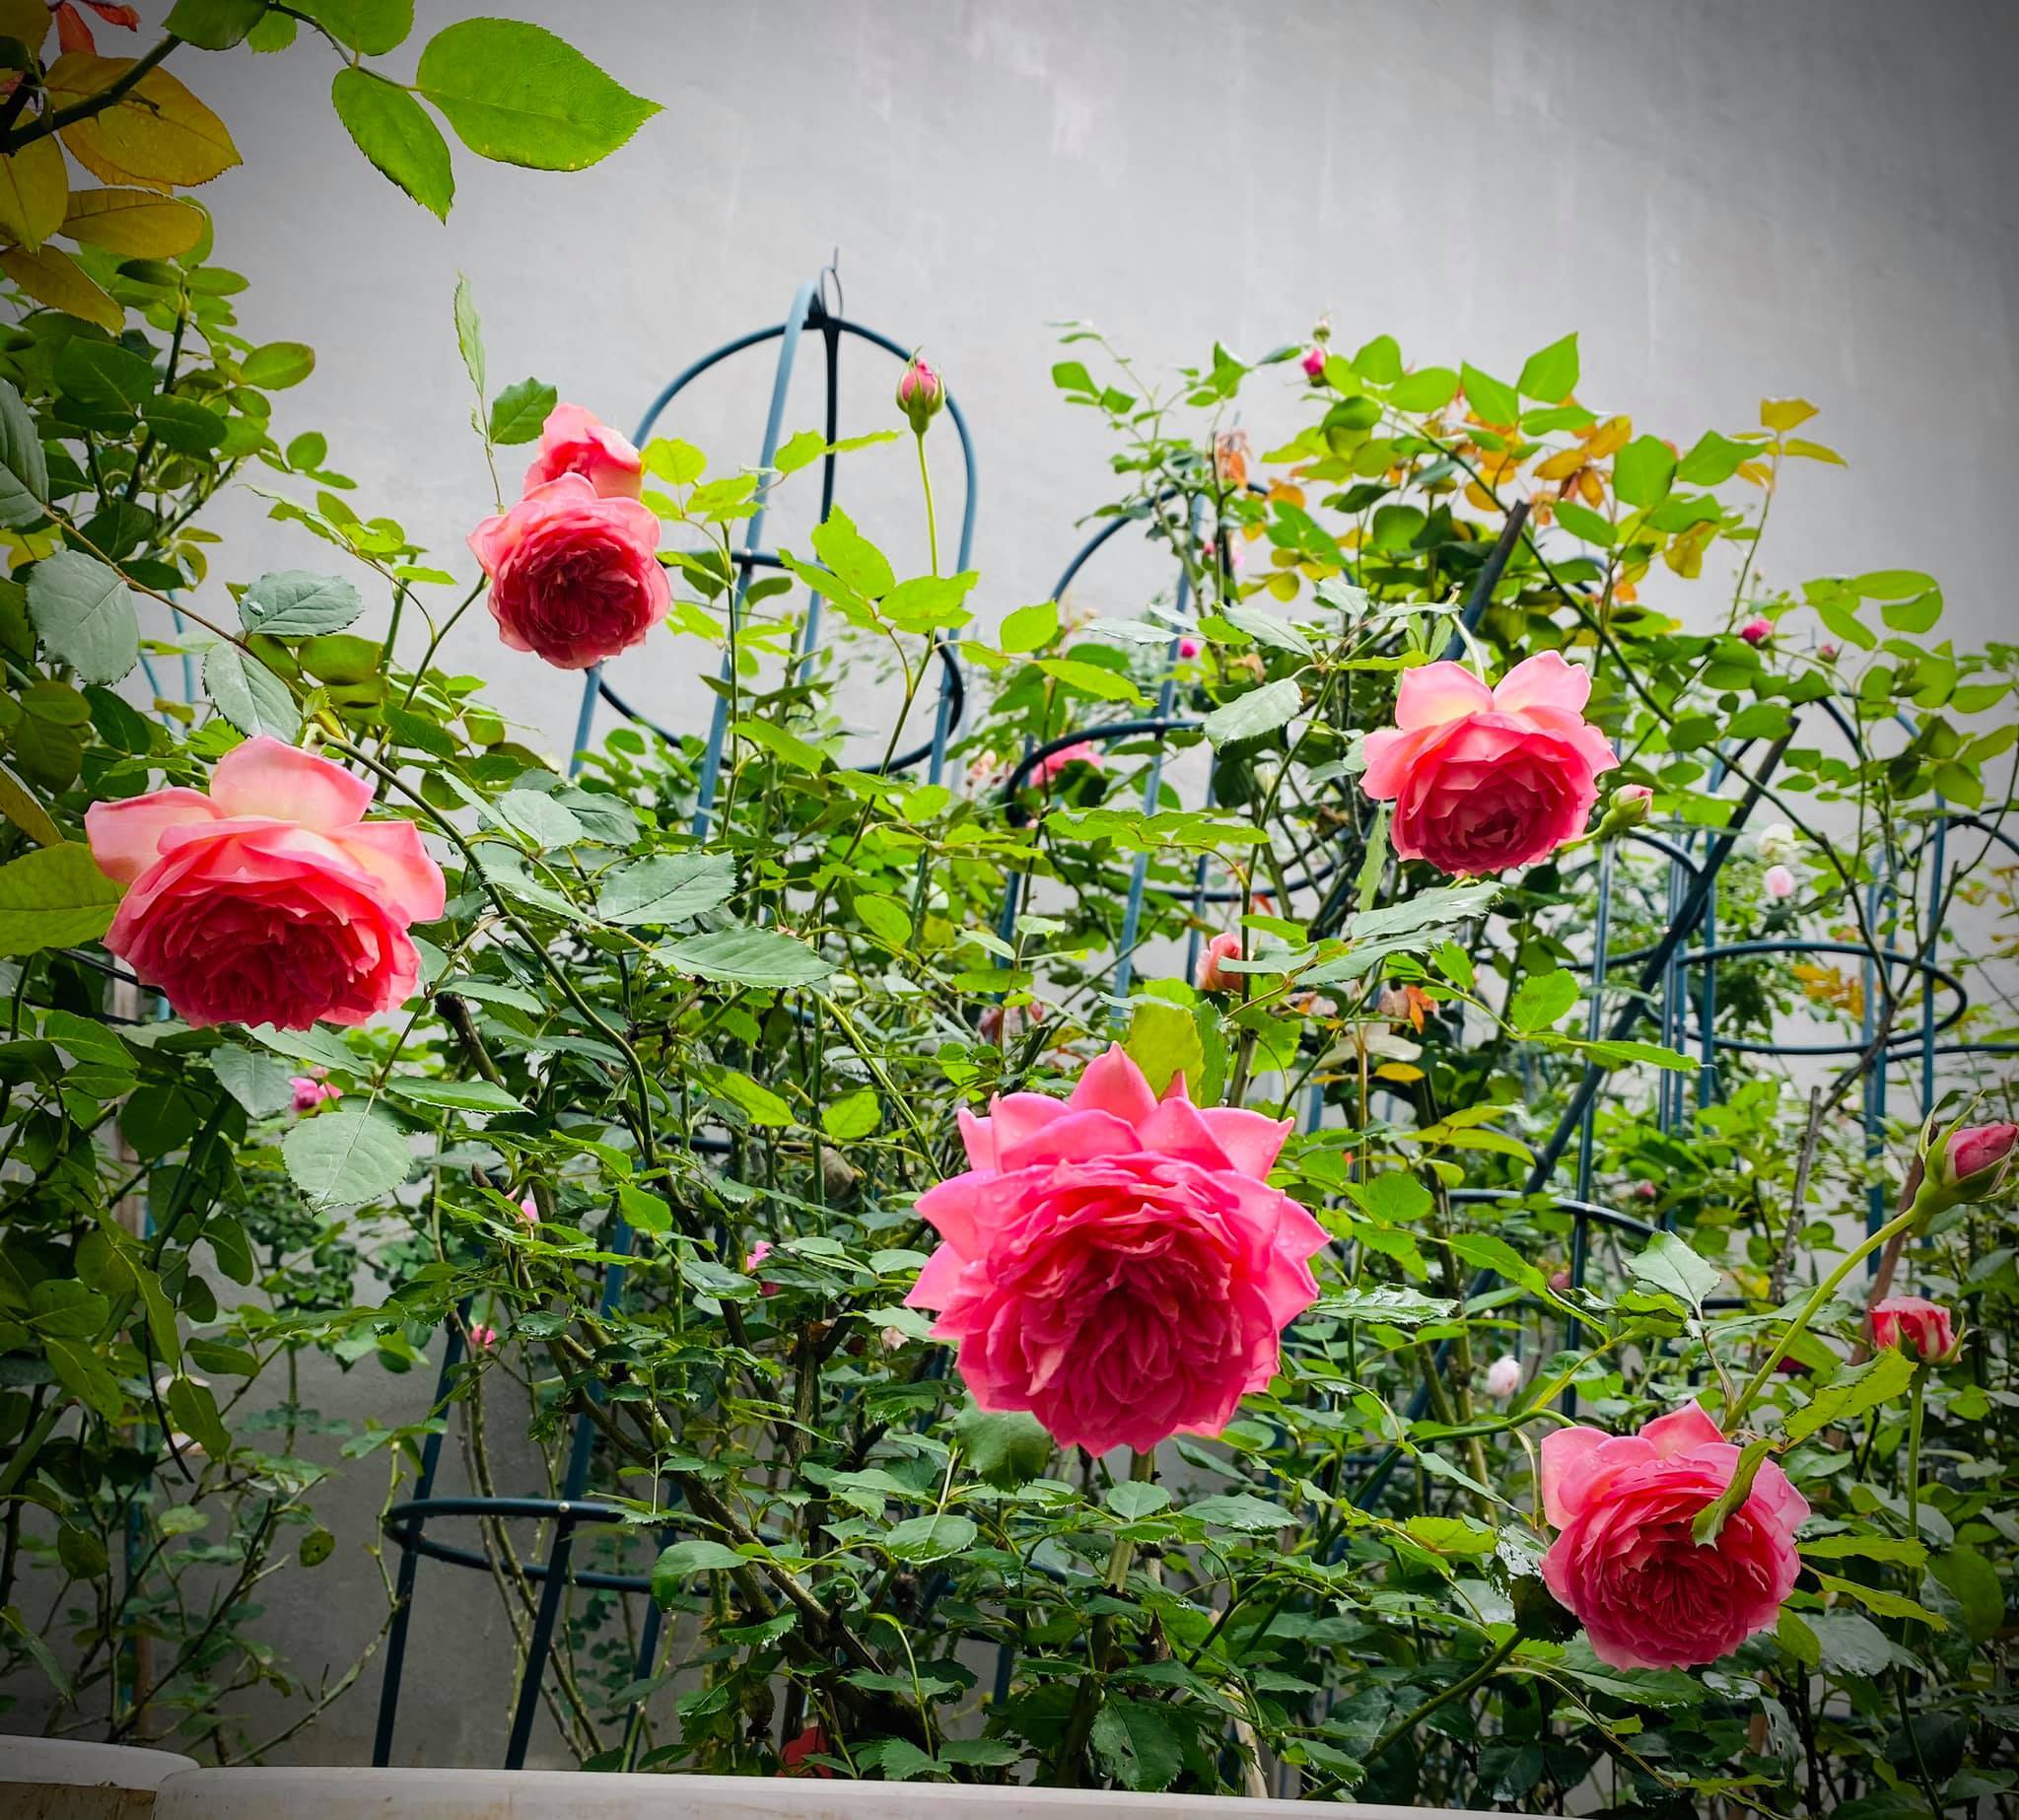 khu vườn đẹp,vườn hồng bạc tỉ,Hà Giang,hoa hồng ngoại